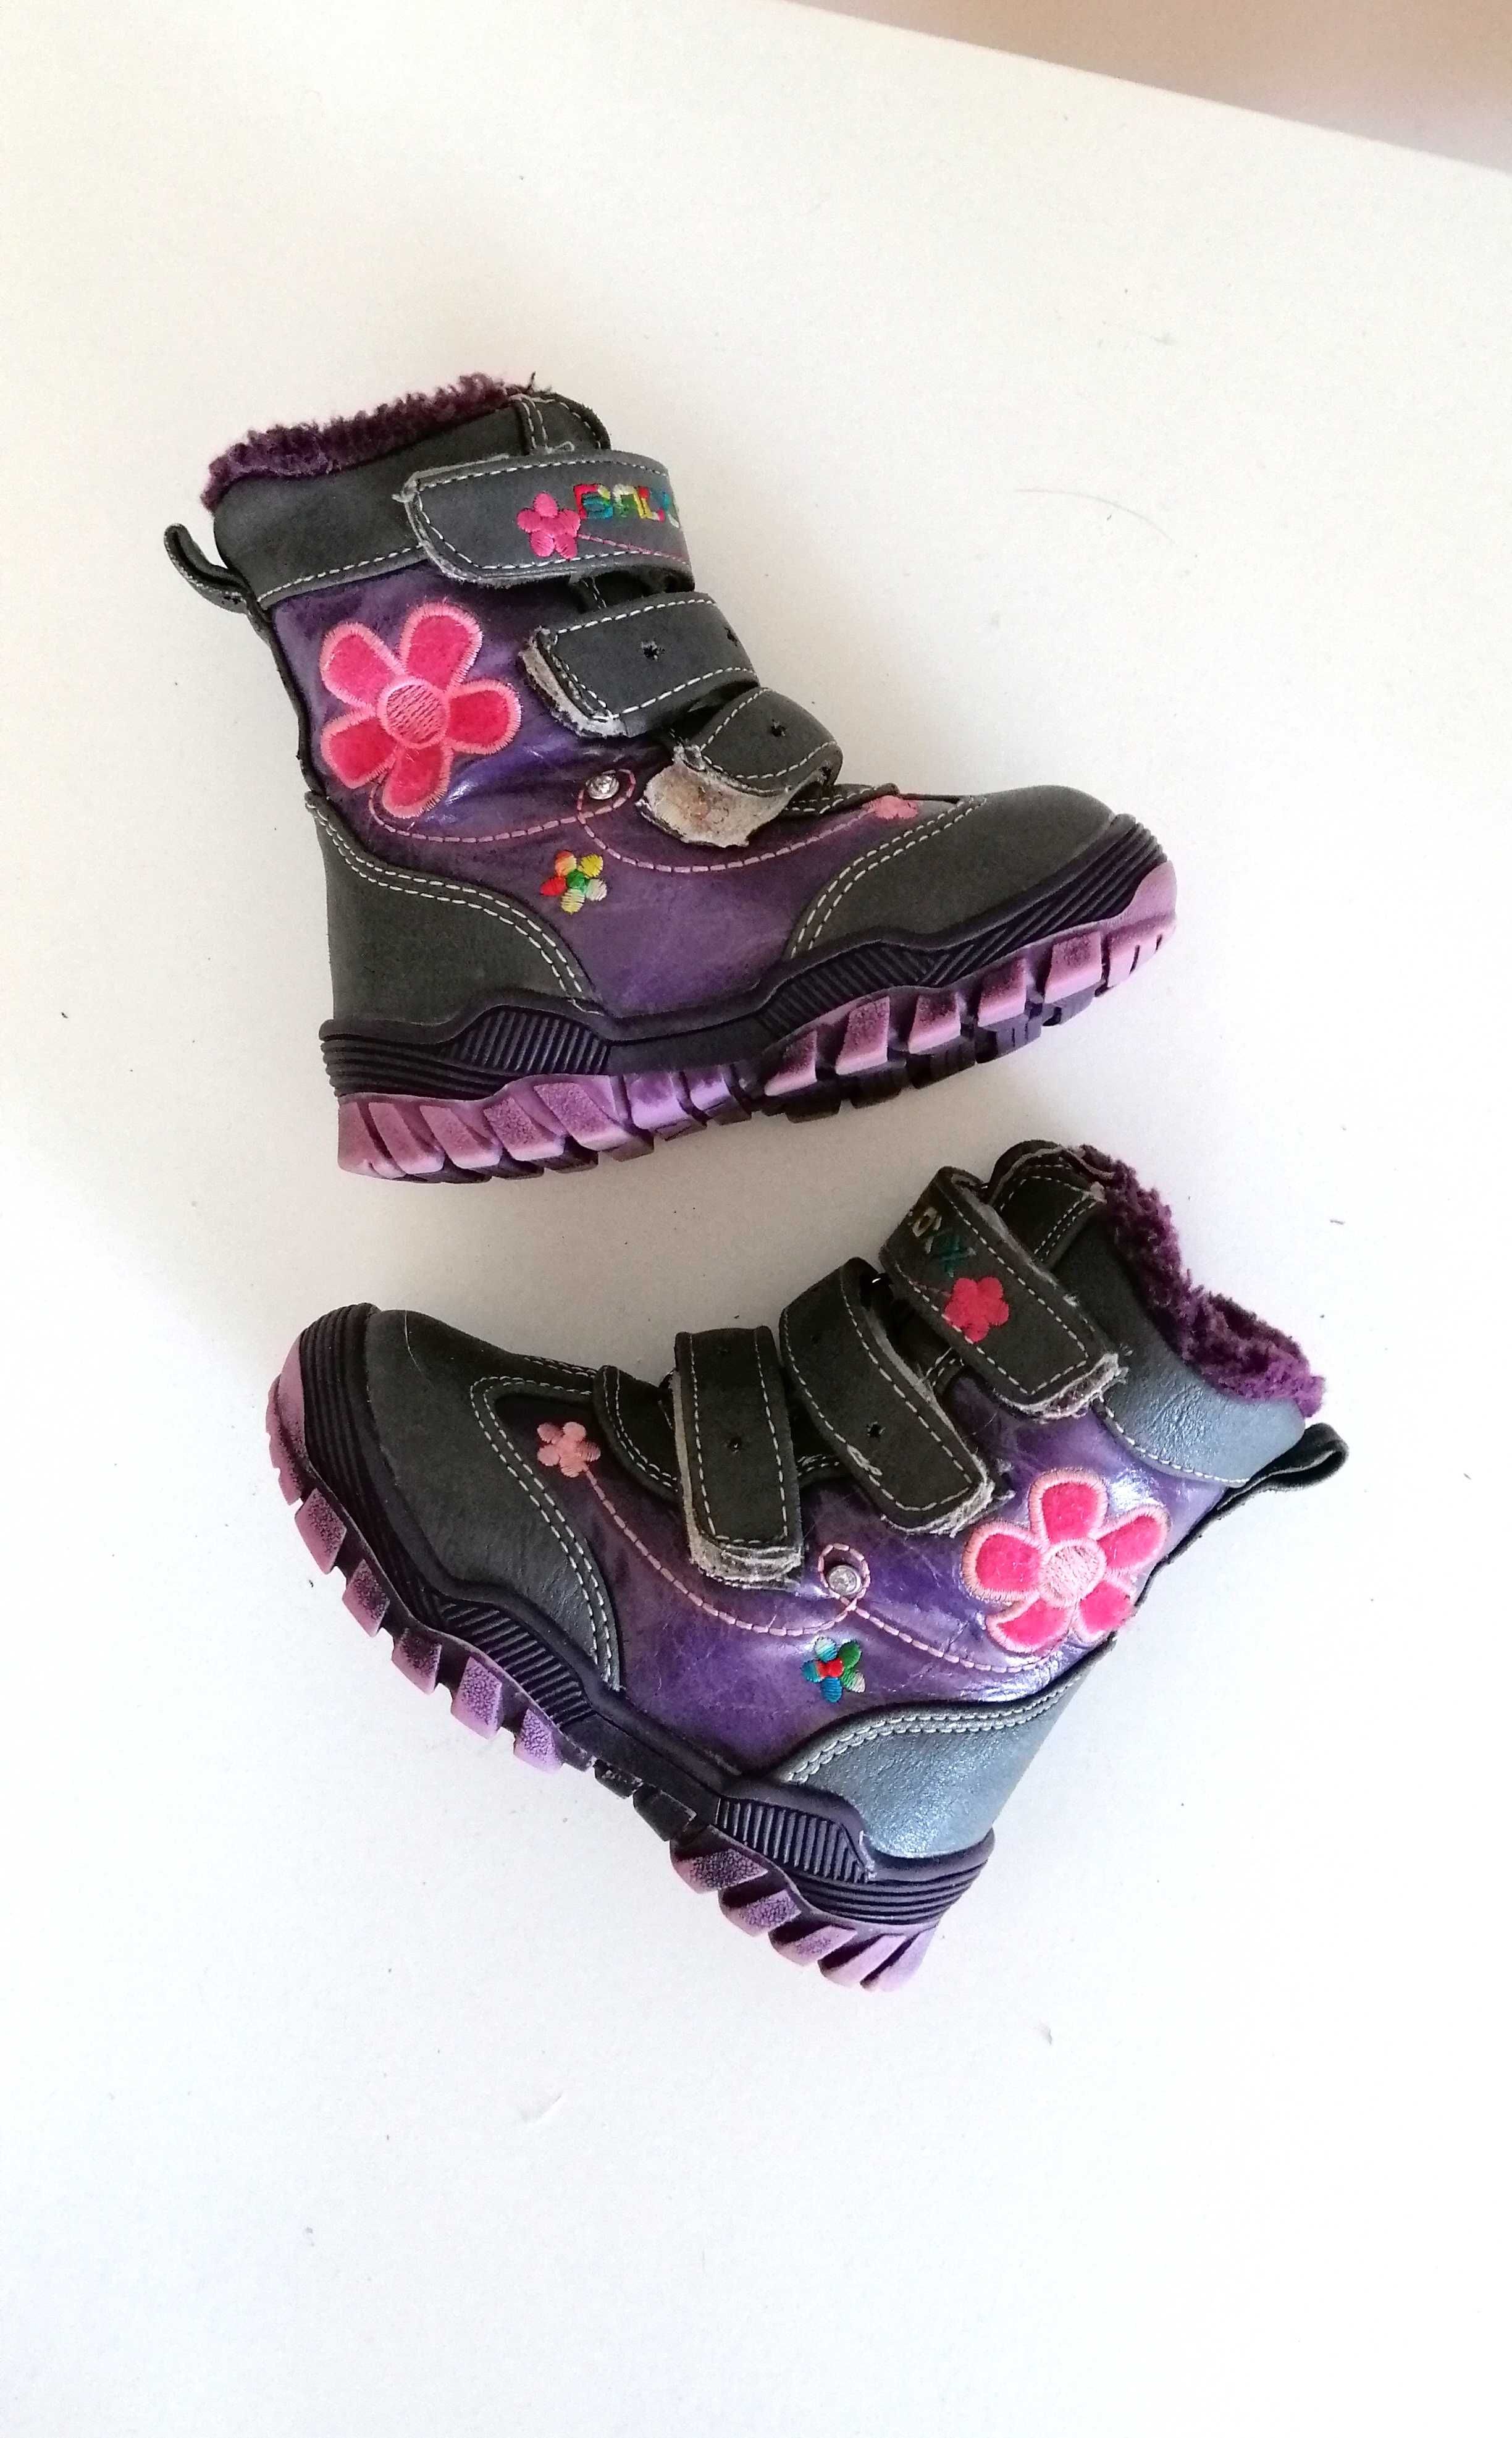 granatowe fioletowe buty na zimę zimowe kozaki dla dziewczynki 22